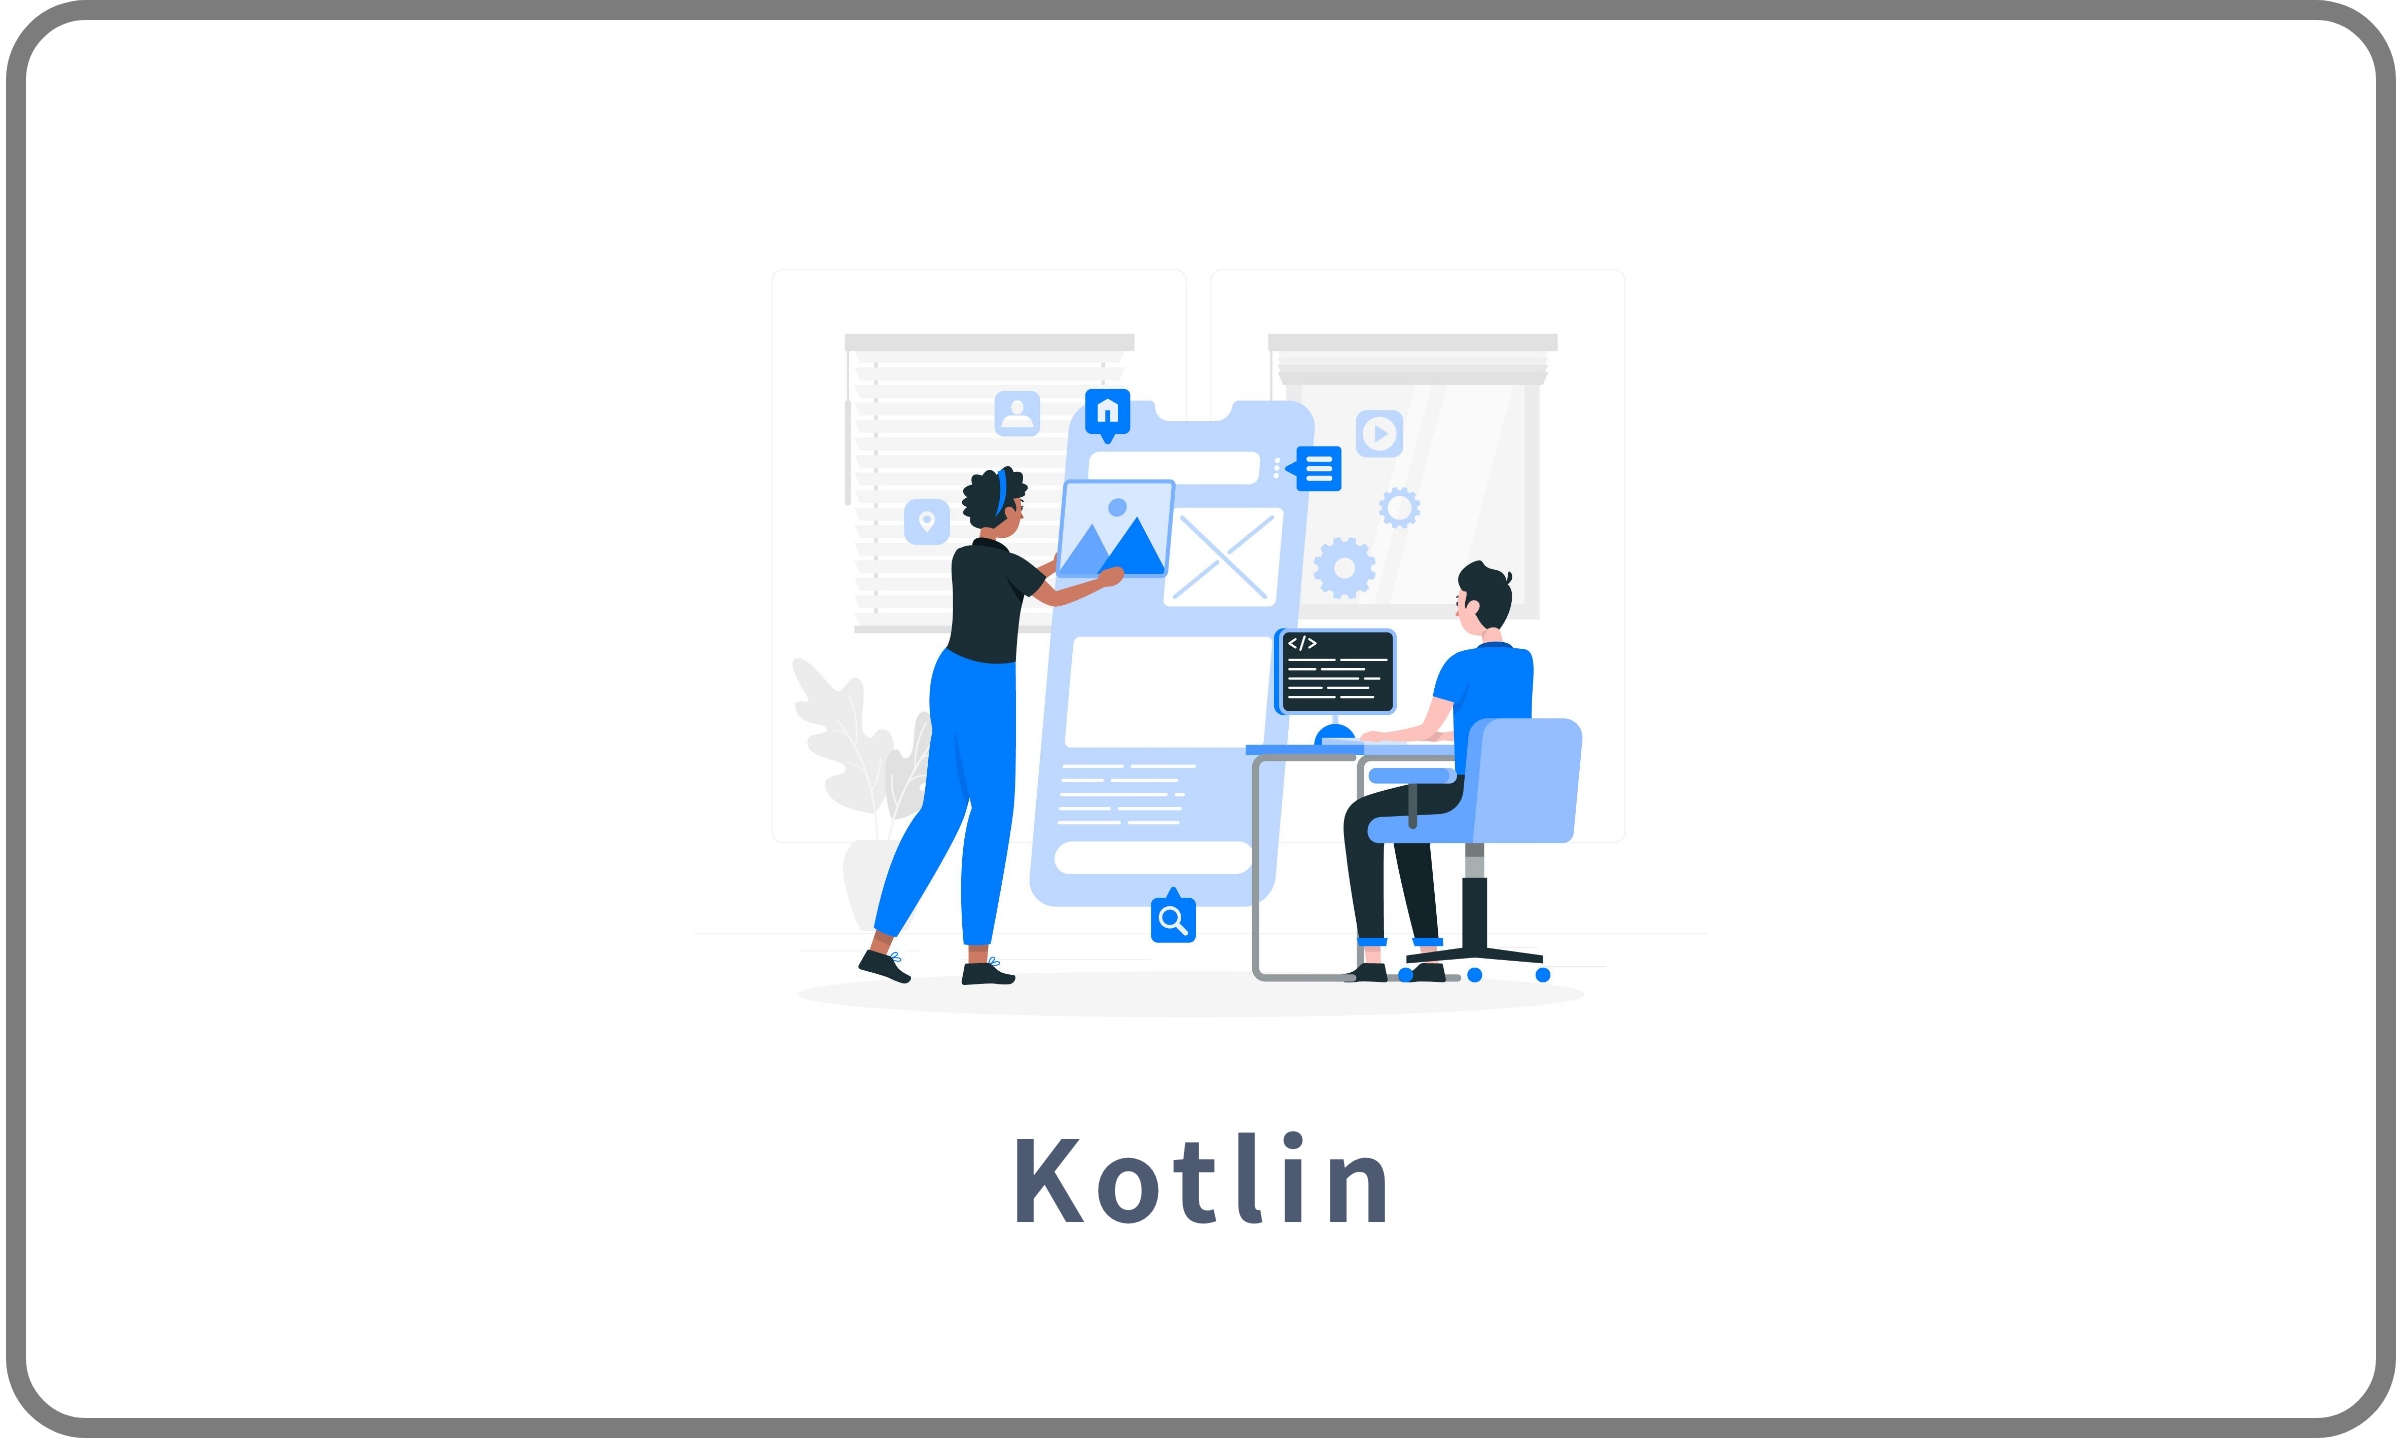 電子書籍スマートフォンアプリ開発(Kotlin)